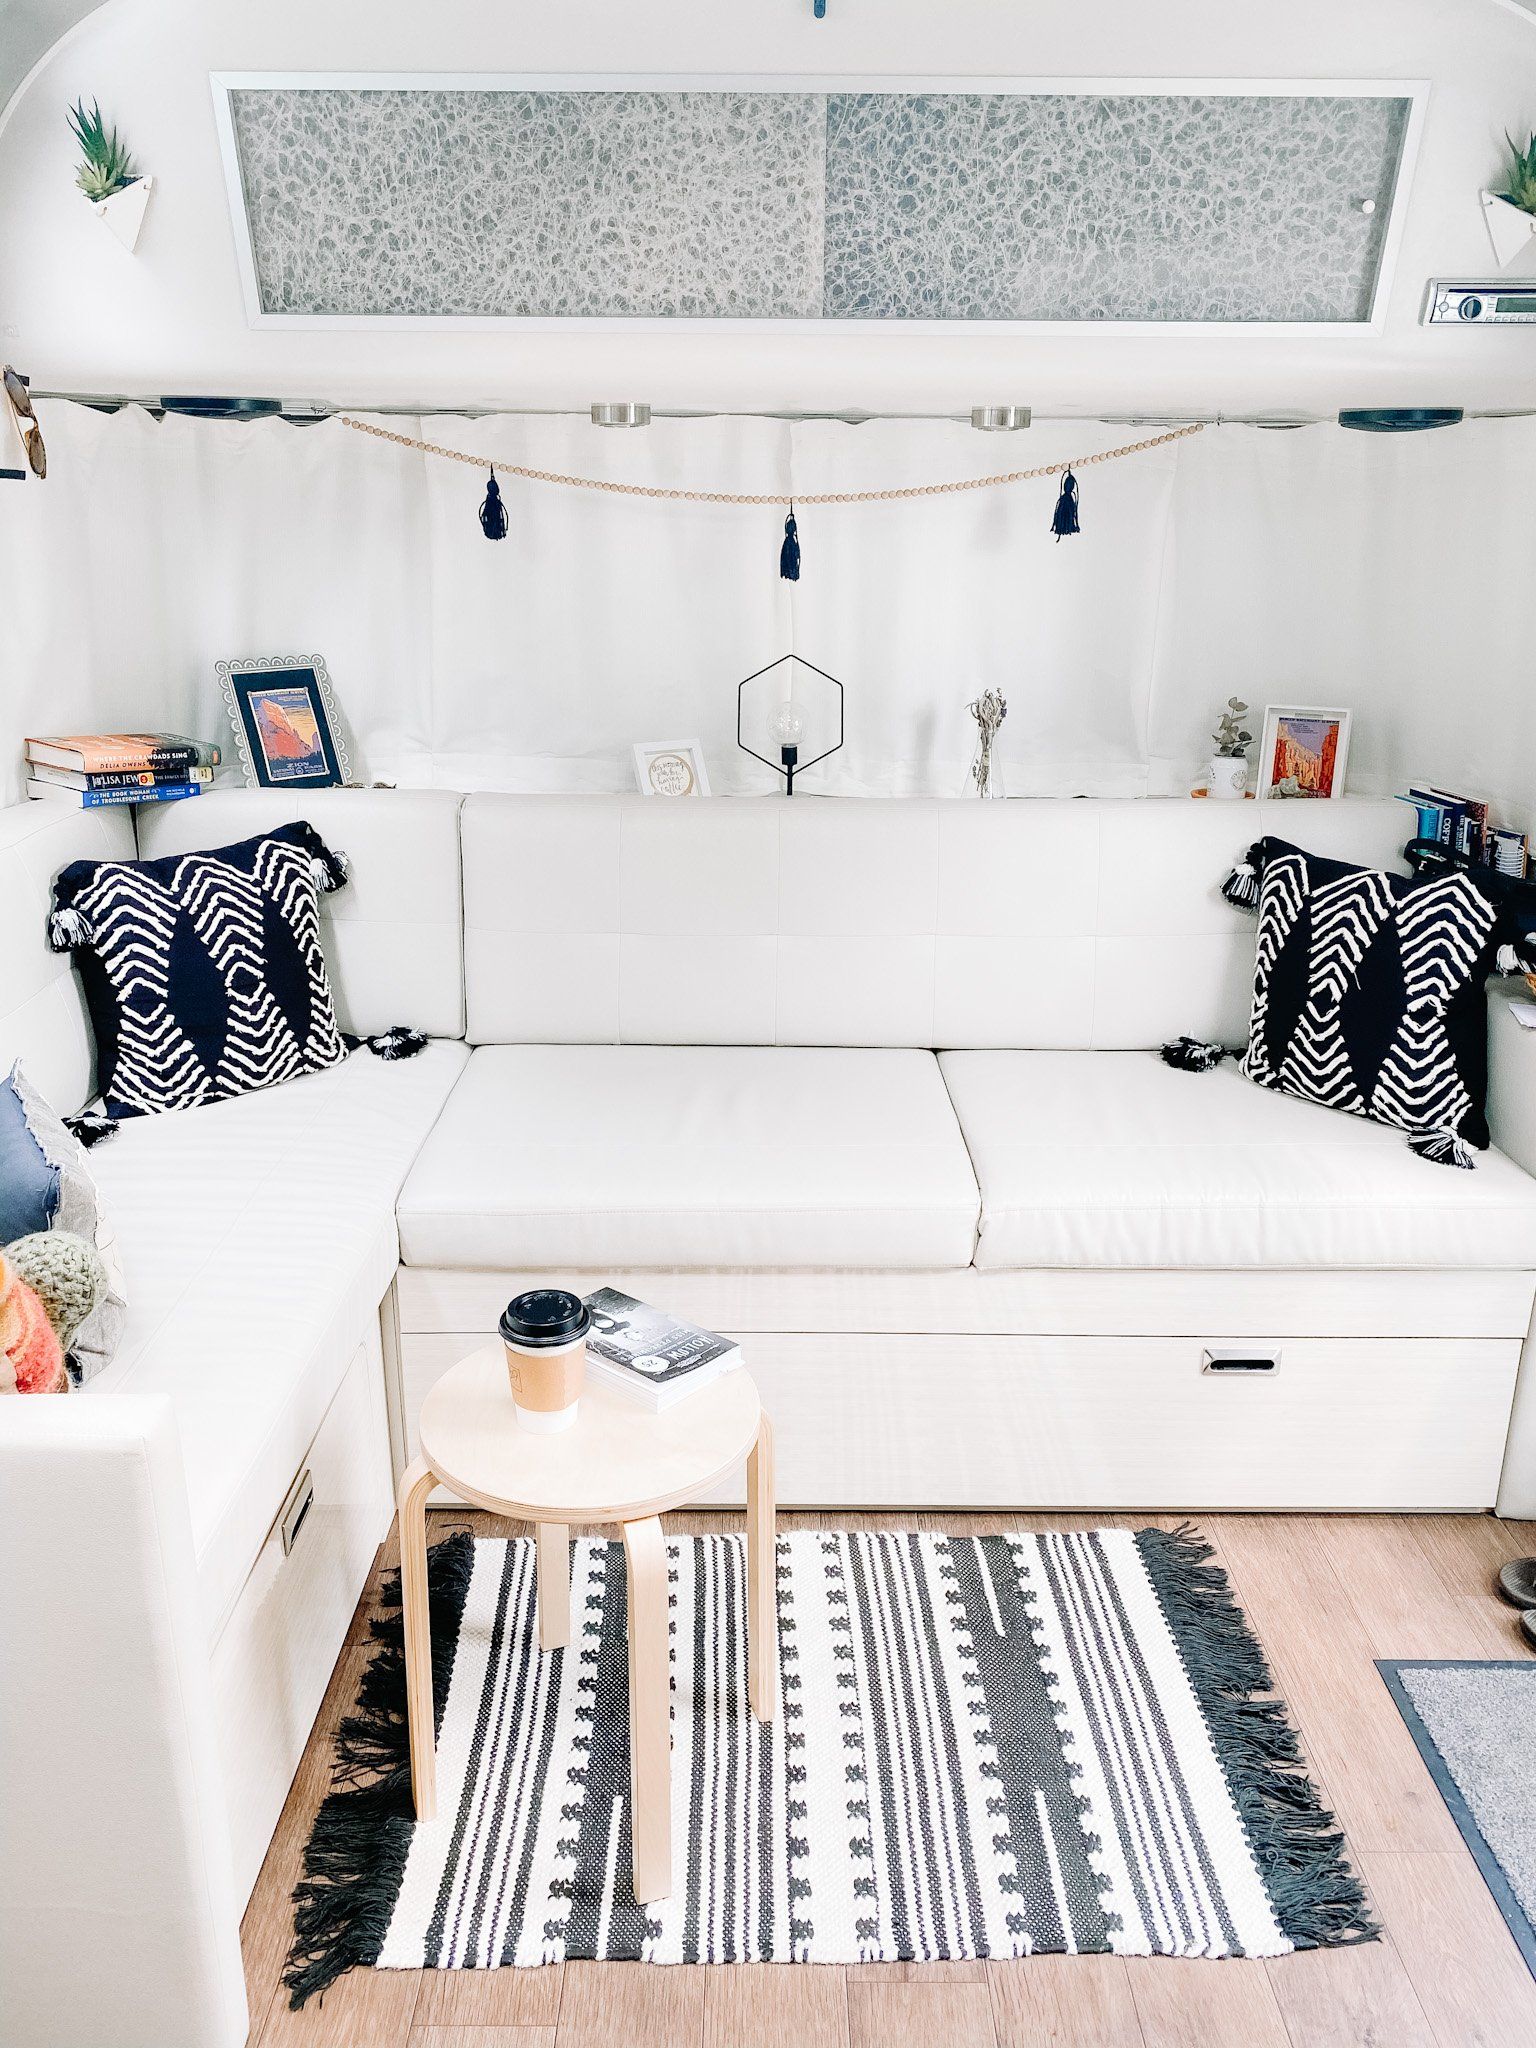 Airstream travel trailer interior decor